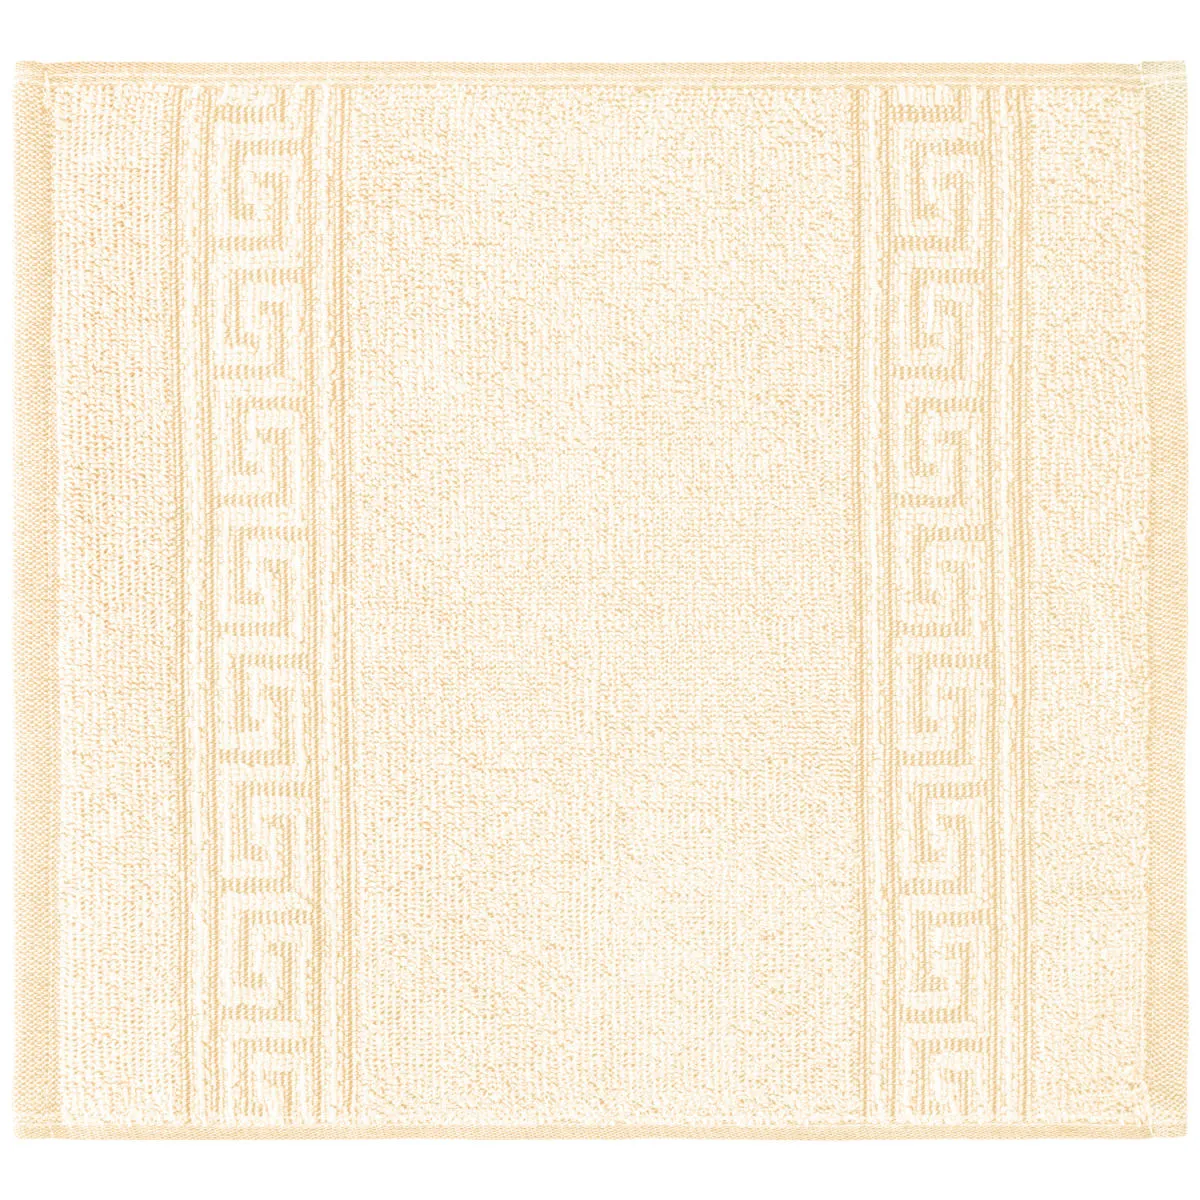 Salvietta bagno Atene ; 30x30 cm (LxL); albicocca; 5 pz. / confezione